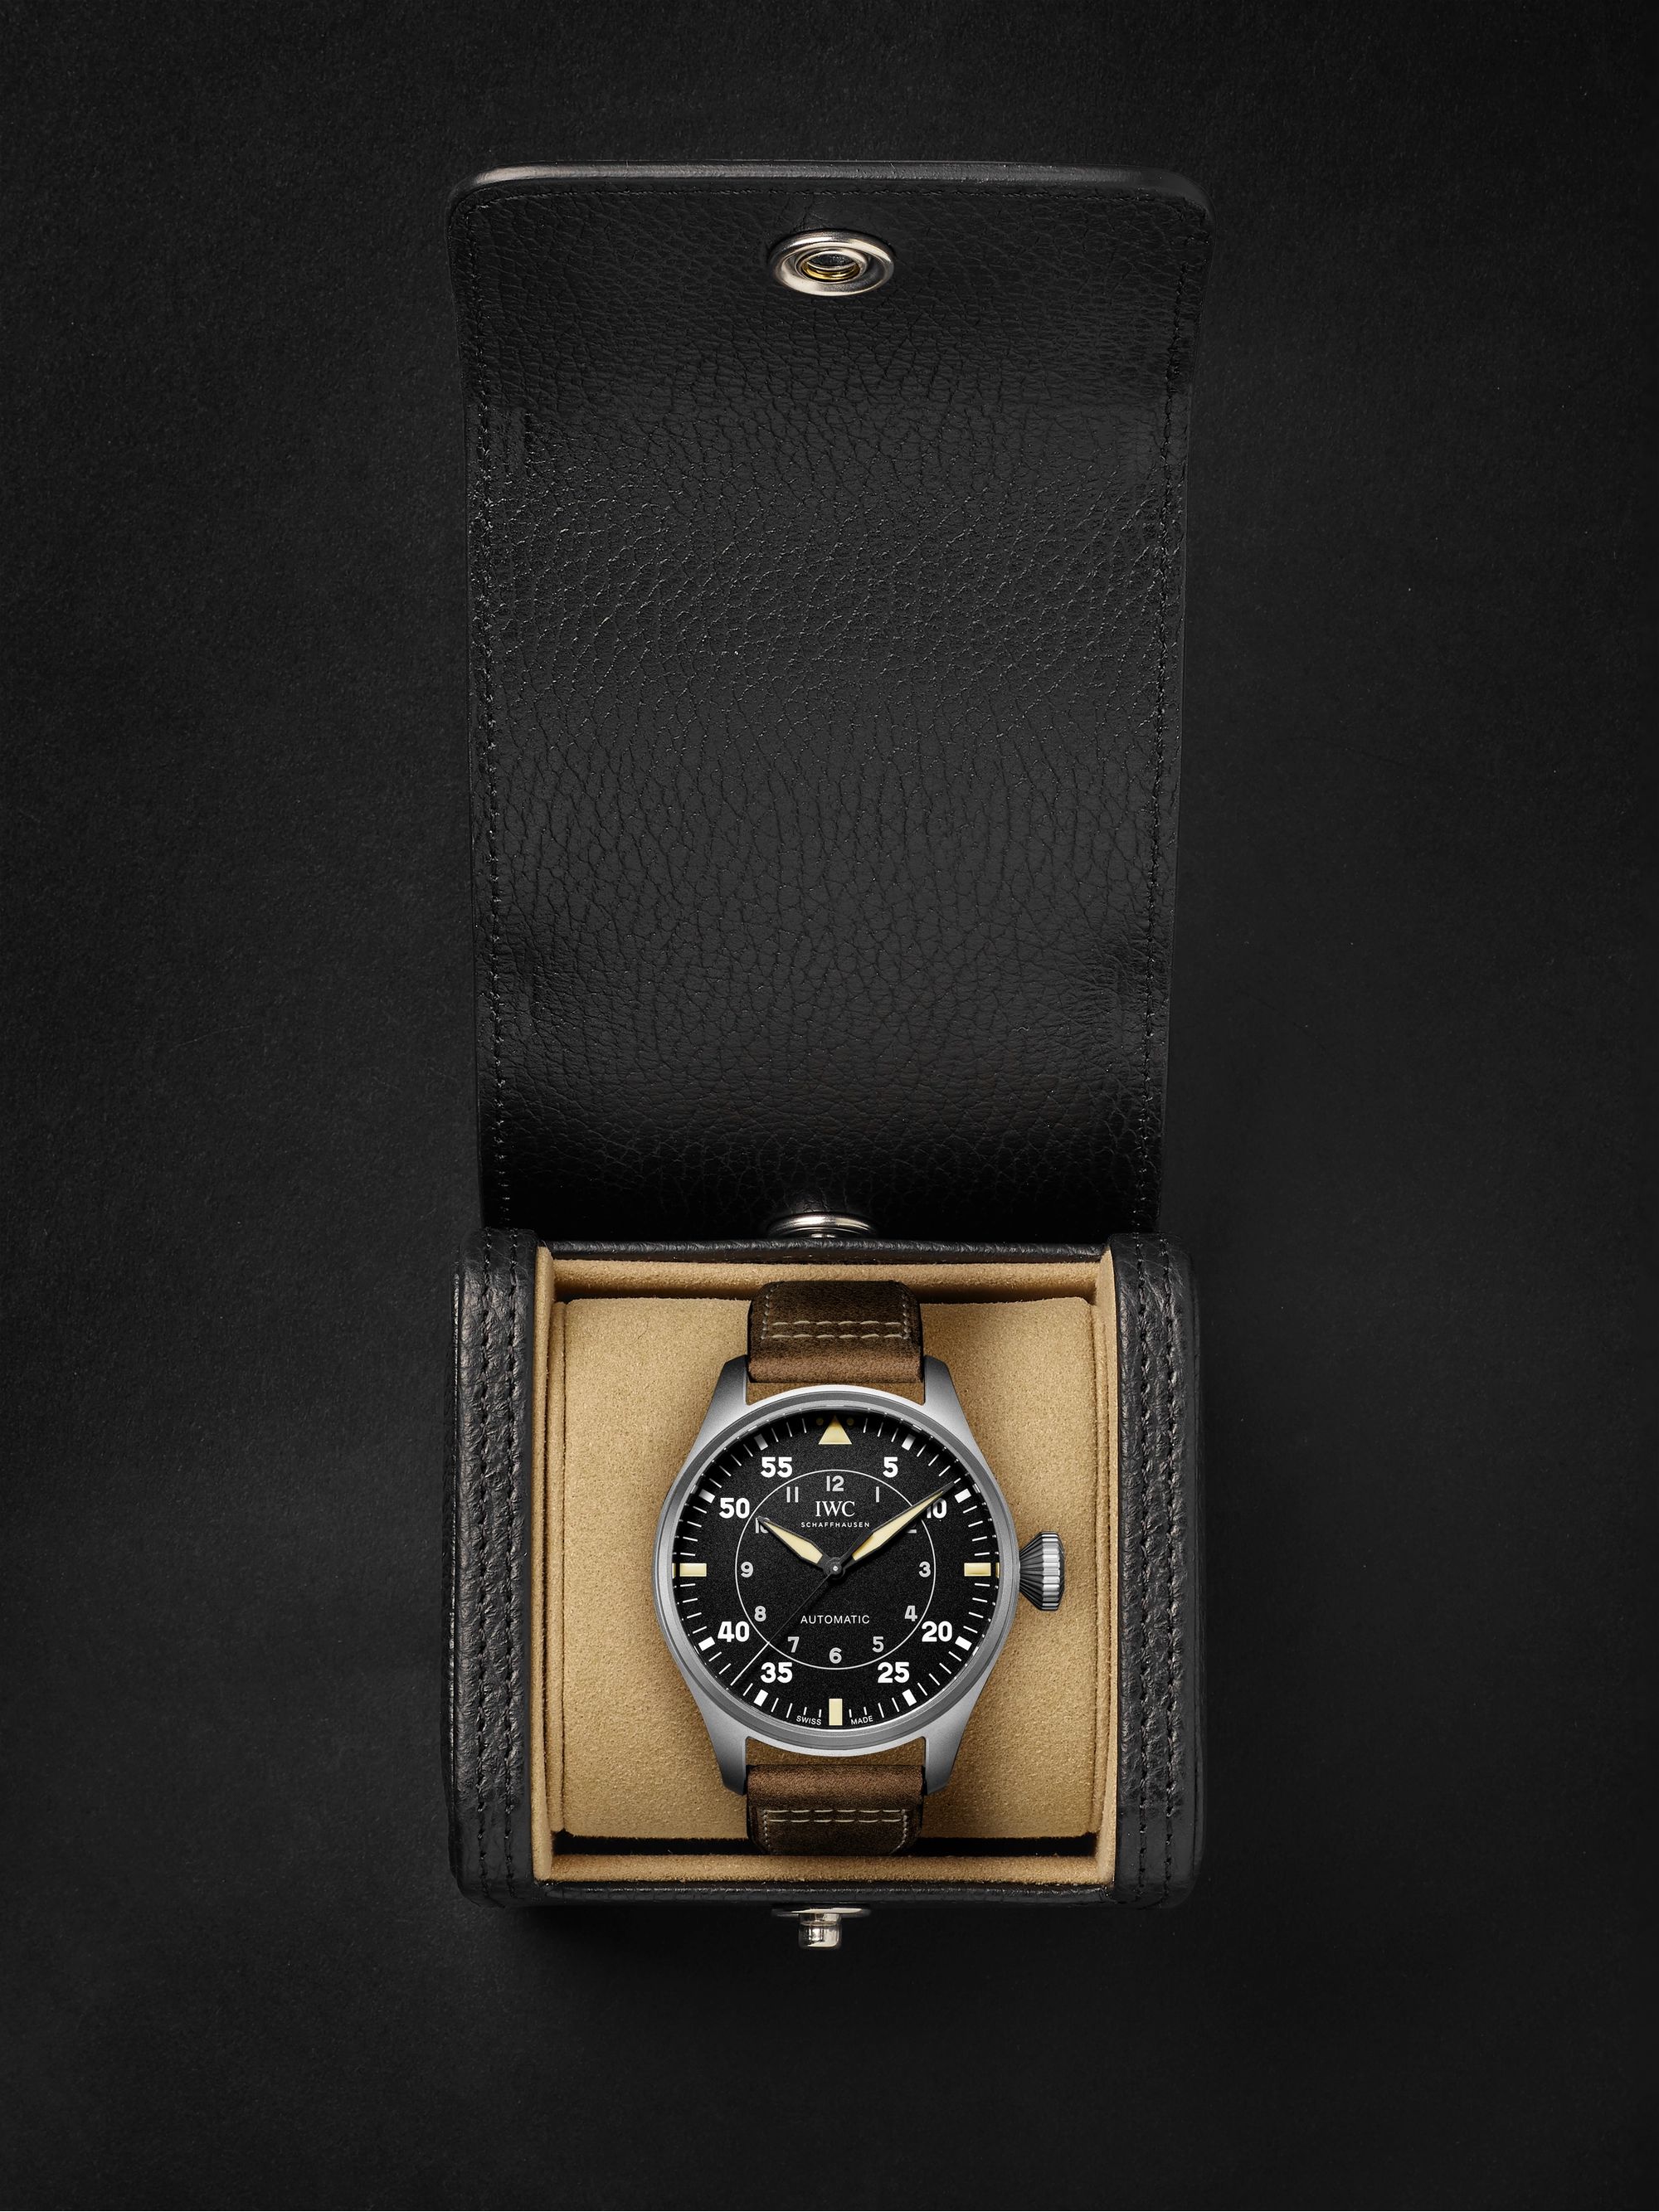 IWC SCHAFFHAUSEN Big Pilot's Watch Spitfire 43mm Titanium and Leather Watch, Ref No. IW329701